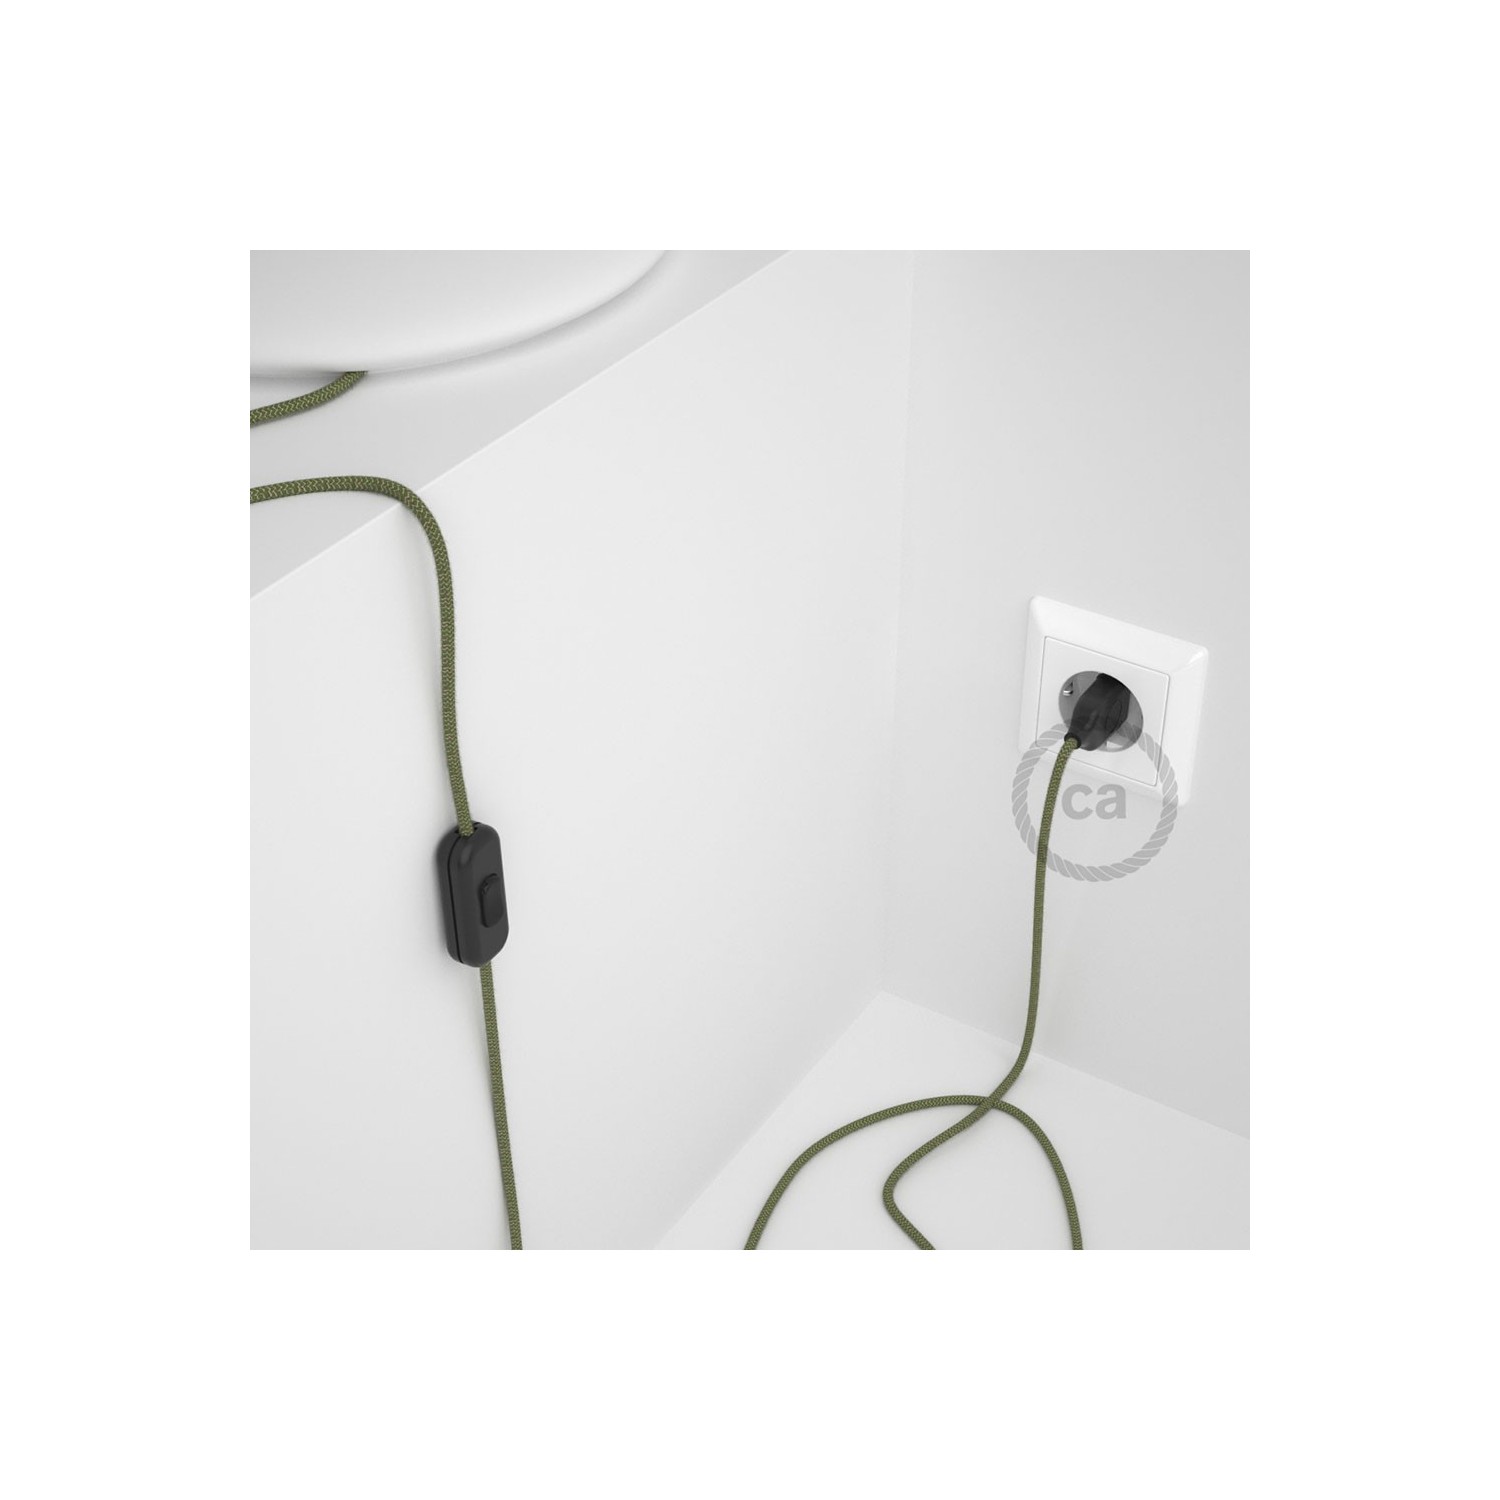 Cordon pour lampe, câble RD72 ZigZag Vert Thym 1,80 m. Choisissez la couleur de la fiche et de l'interrupteur!